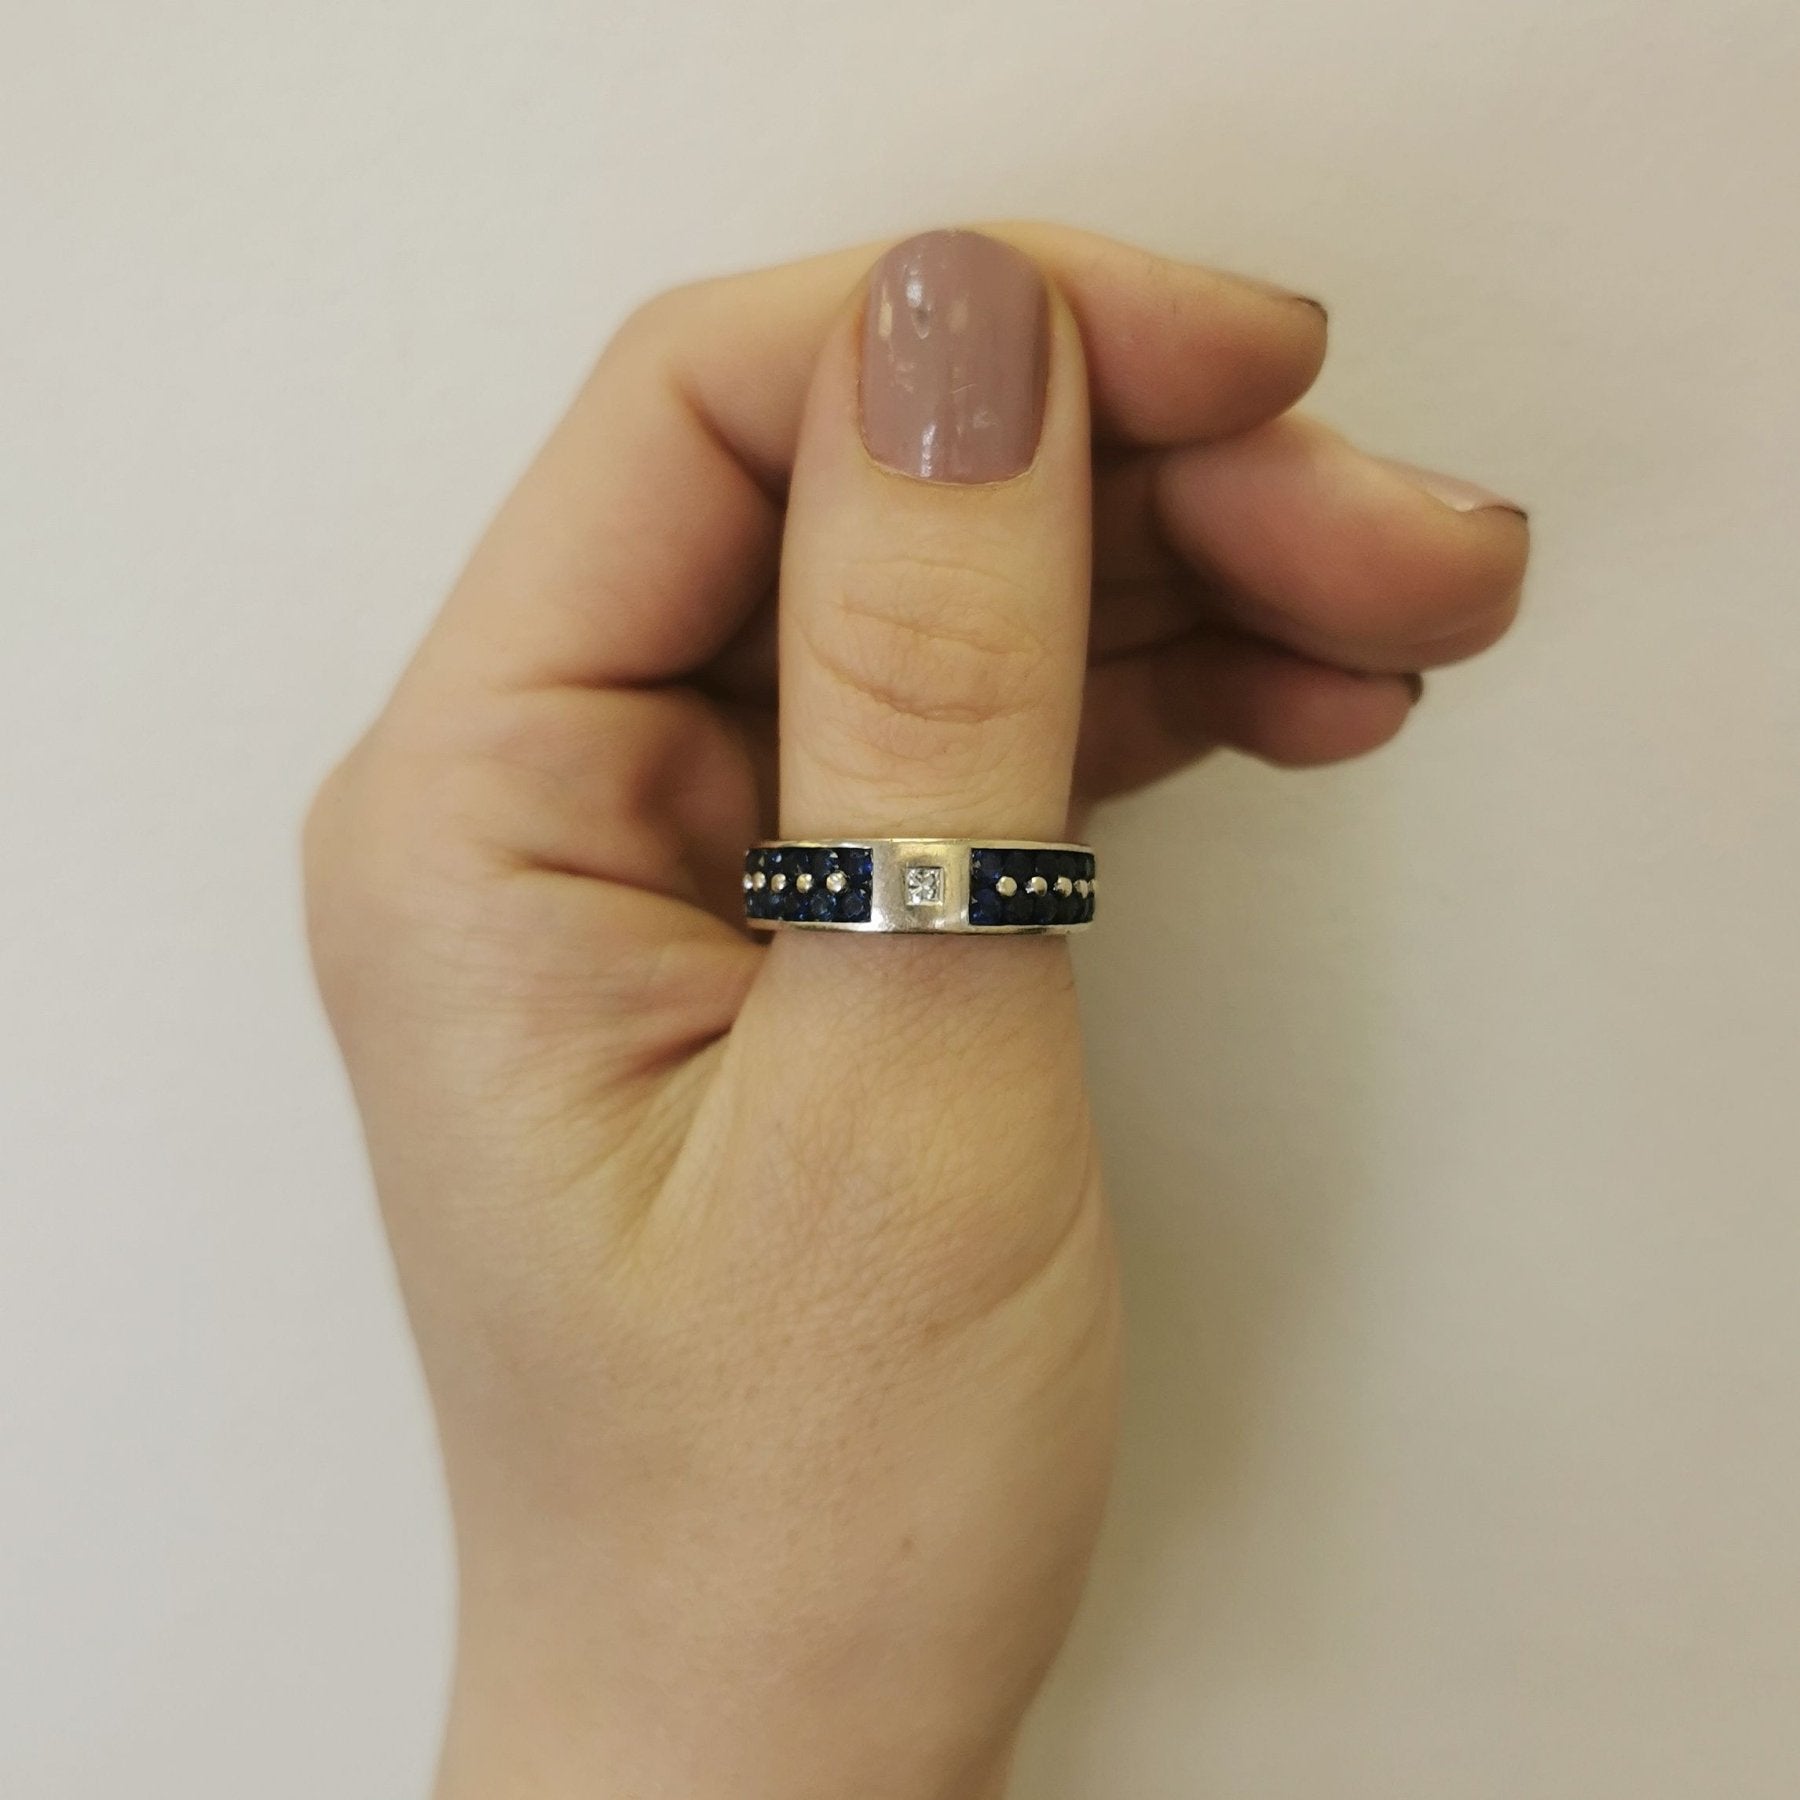 'Effy' Blue Sapphire & Diamond Ring | 1.44ctw, 0.05ct | SZ 9.75 | - 100 Ways